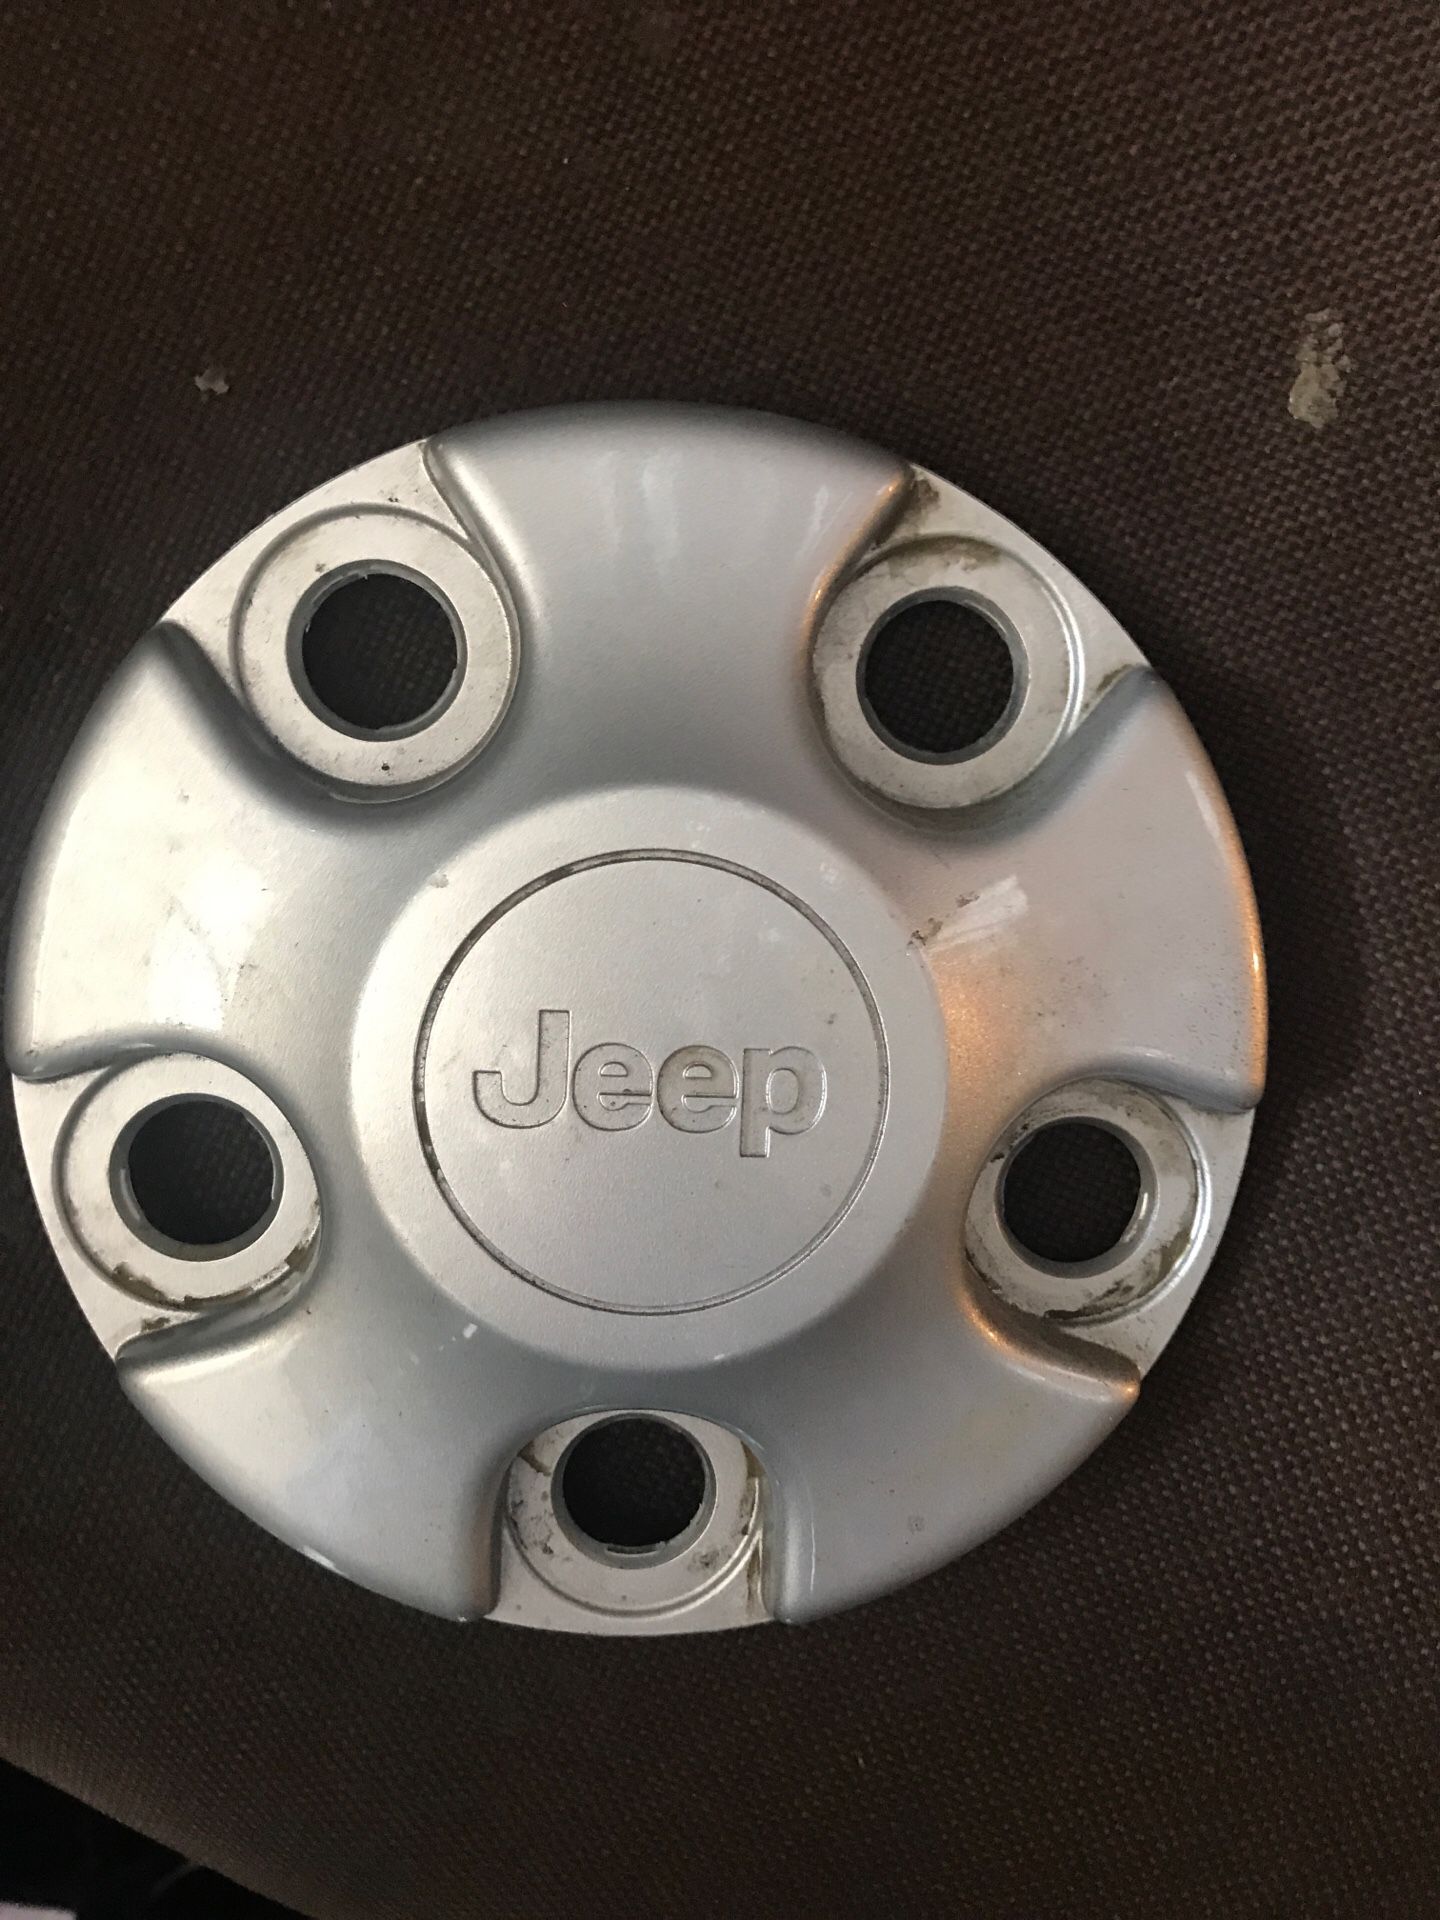 1 Jeep Wrangler center cap for 16” steel wheel